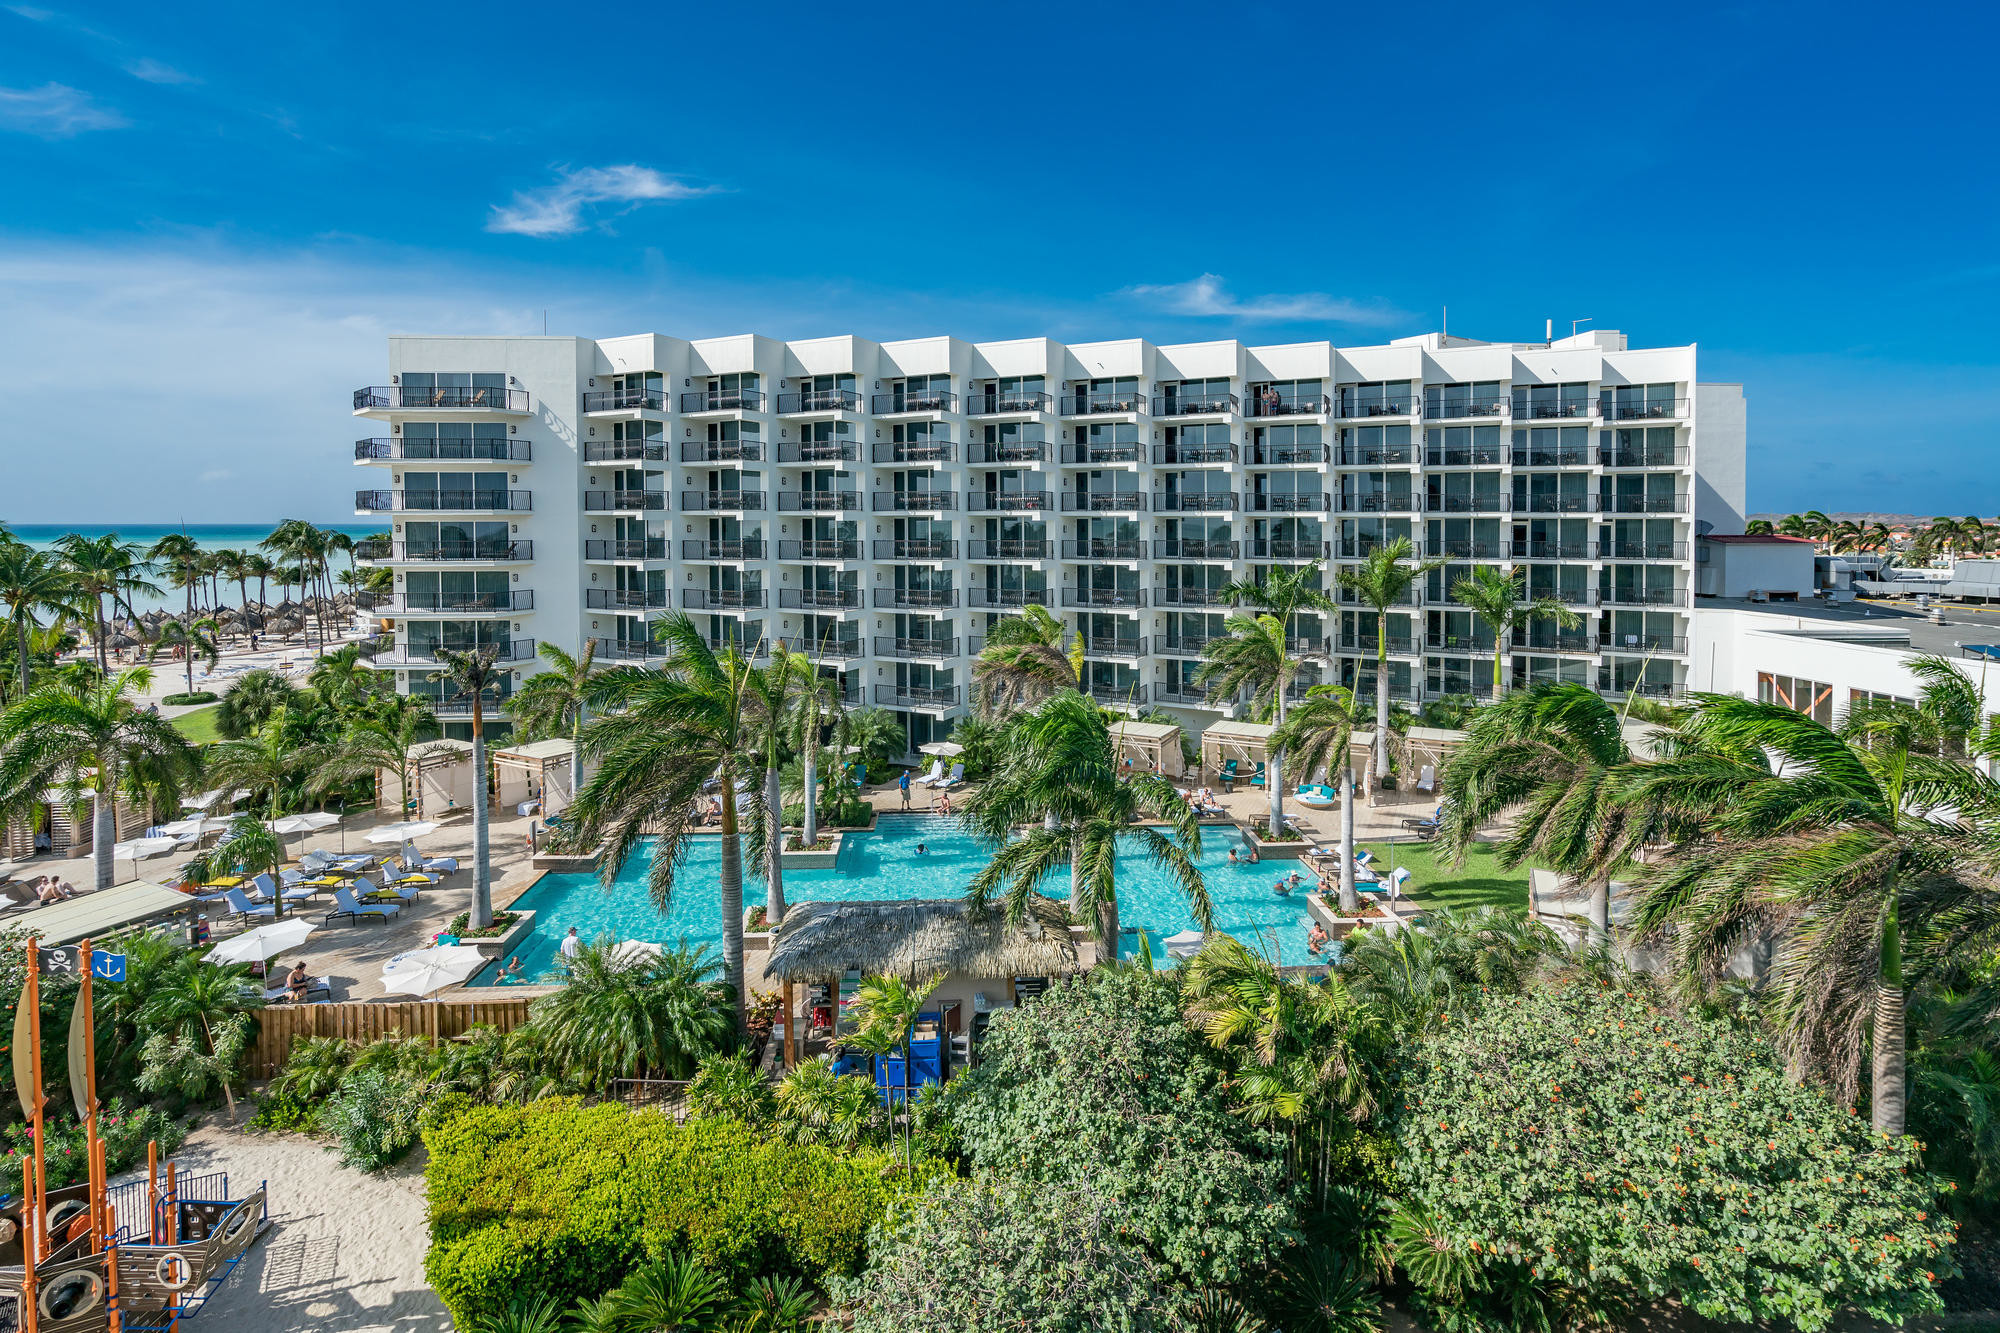 The grounds at the Aruba Marriott Resort and Stellaris Casino